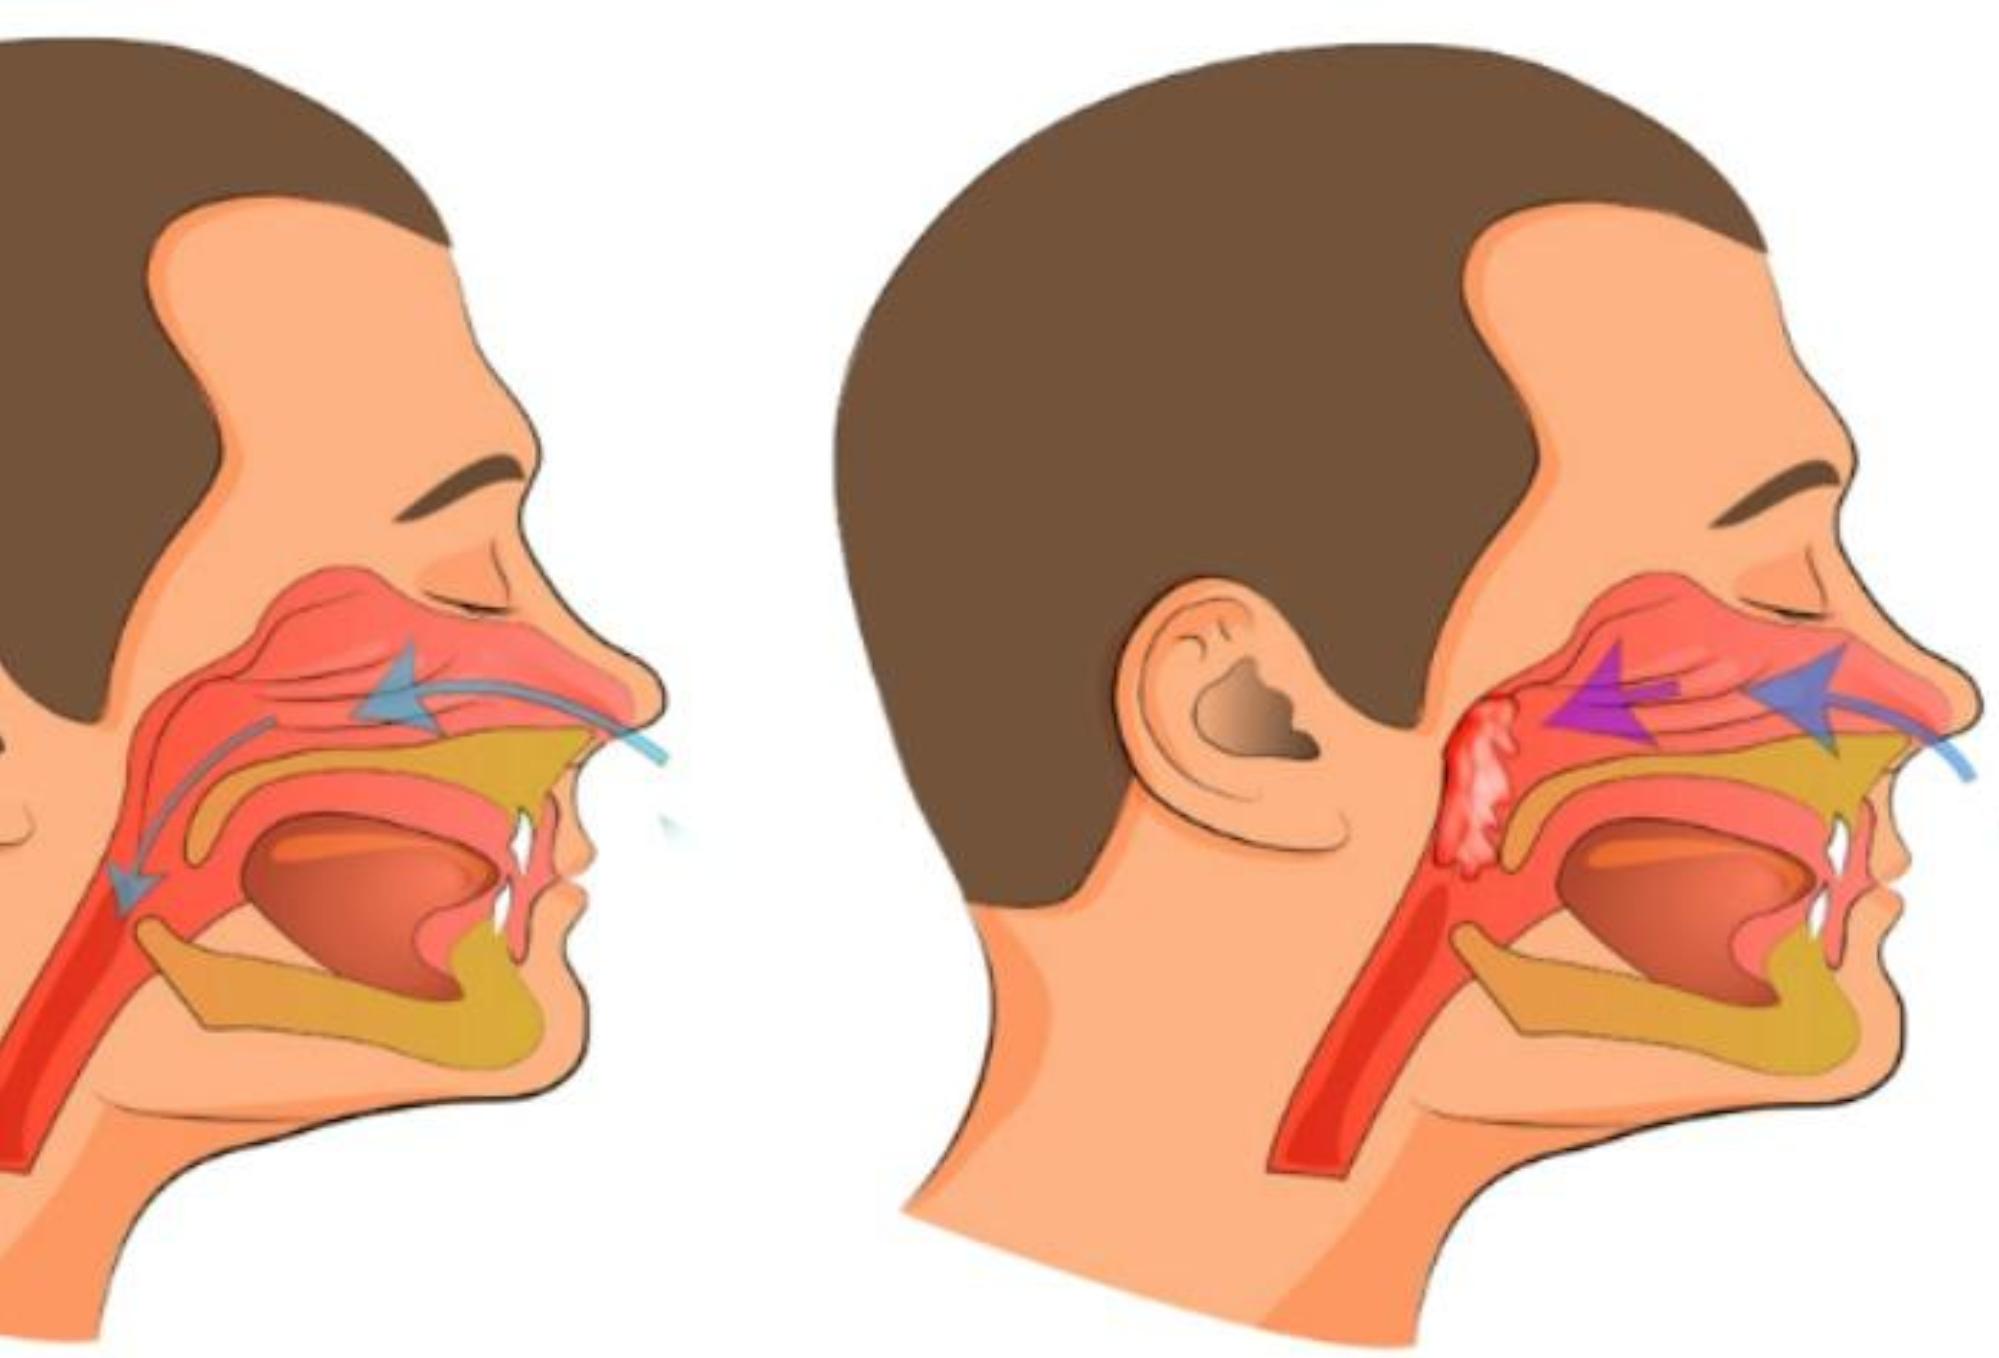 Μπούκωμα καταρροή και βουλωμένη μύτη: Δείτε να το αντιμετωπίσετε γρήγορα φυσικά και να αναπνεύσετε πάλι ελεύθερα